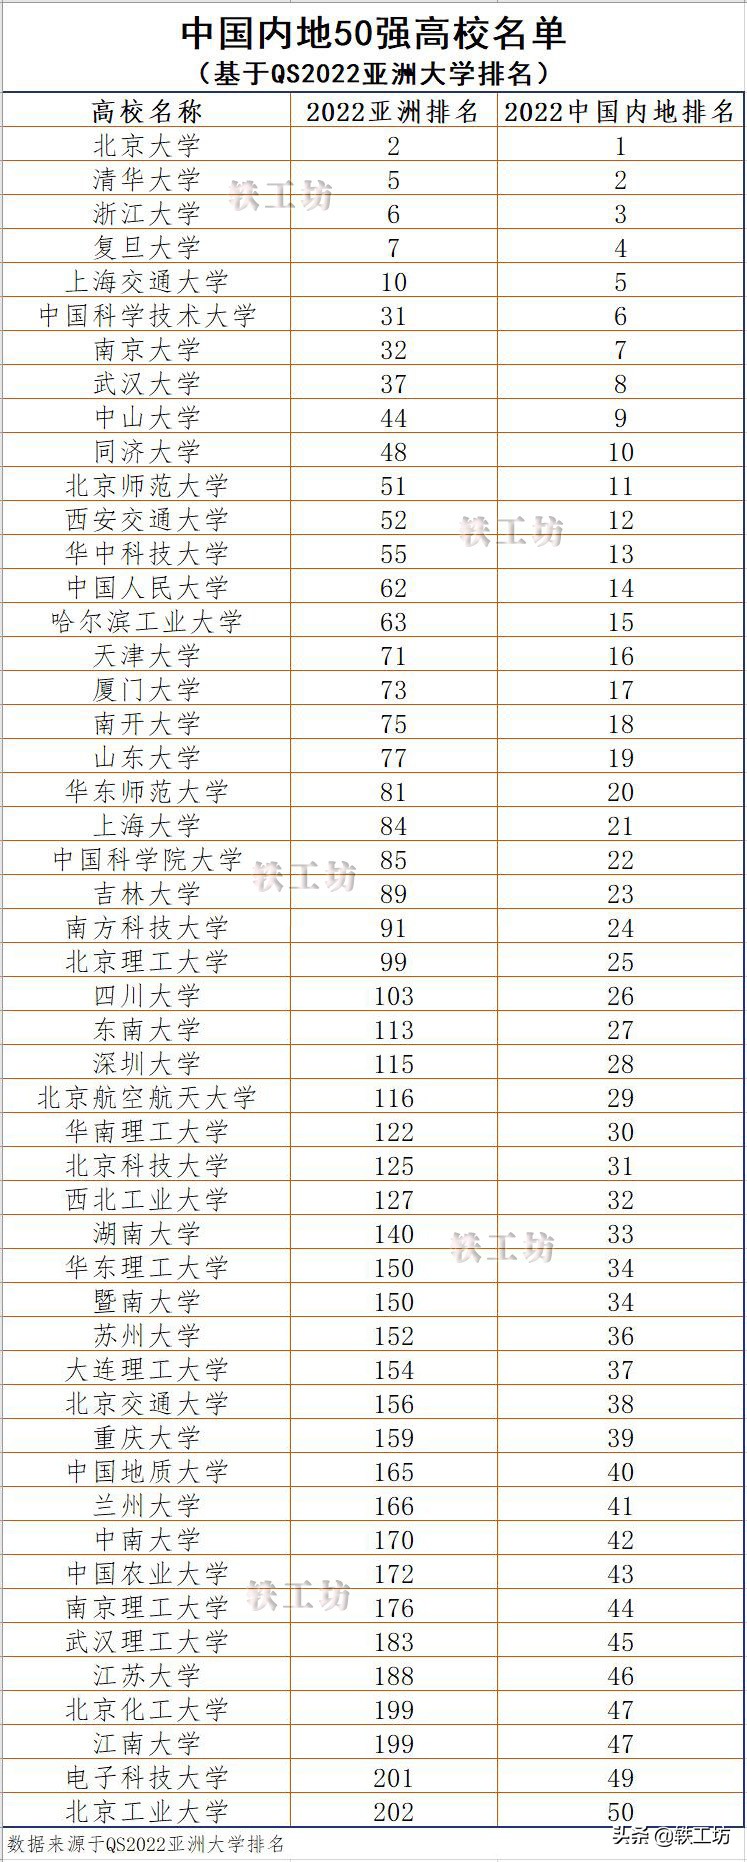 中国大学50强,中国大学50强排名